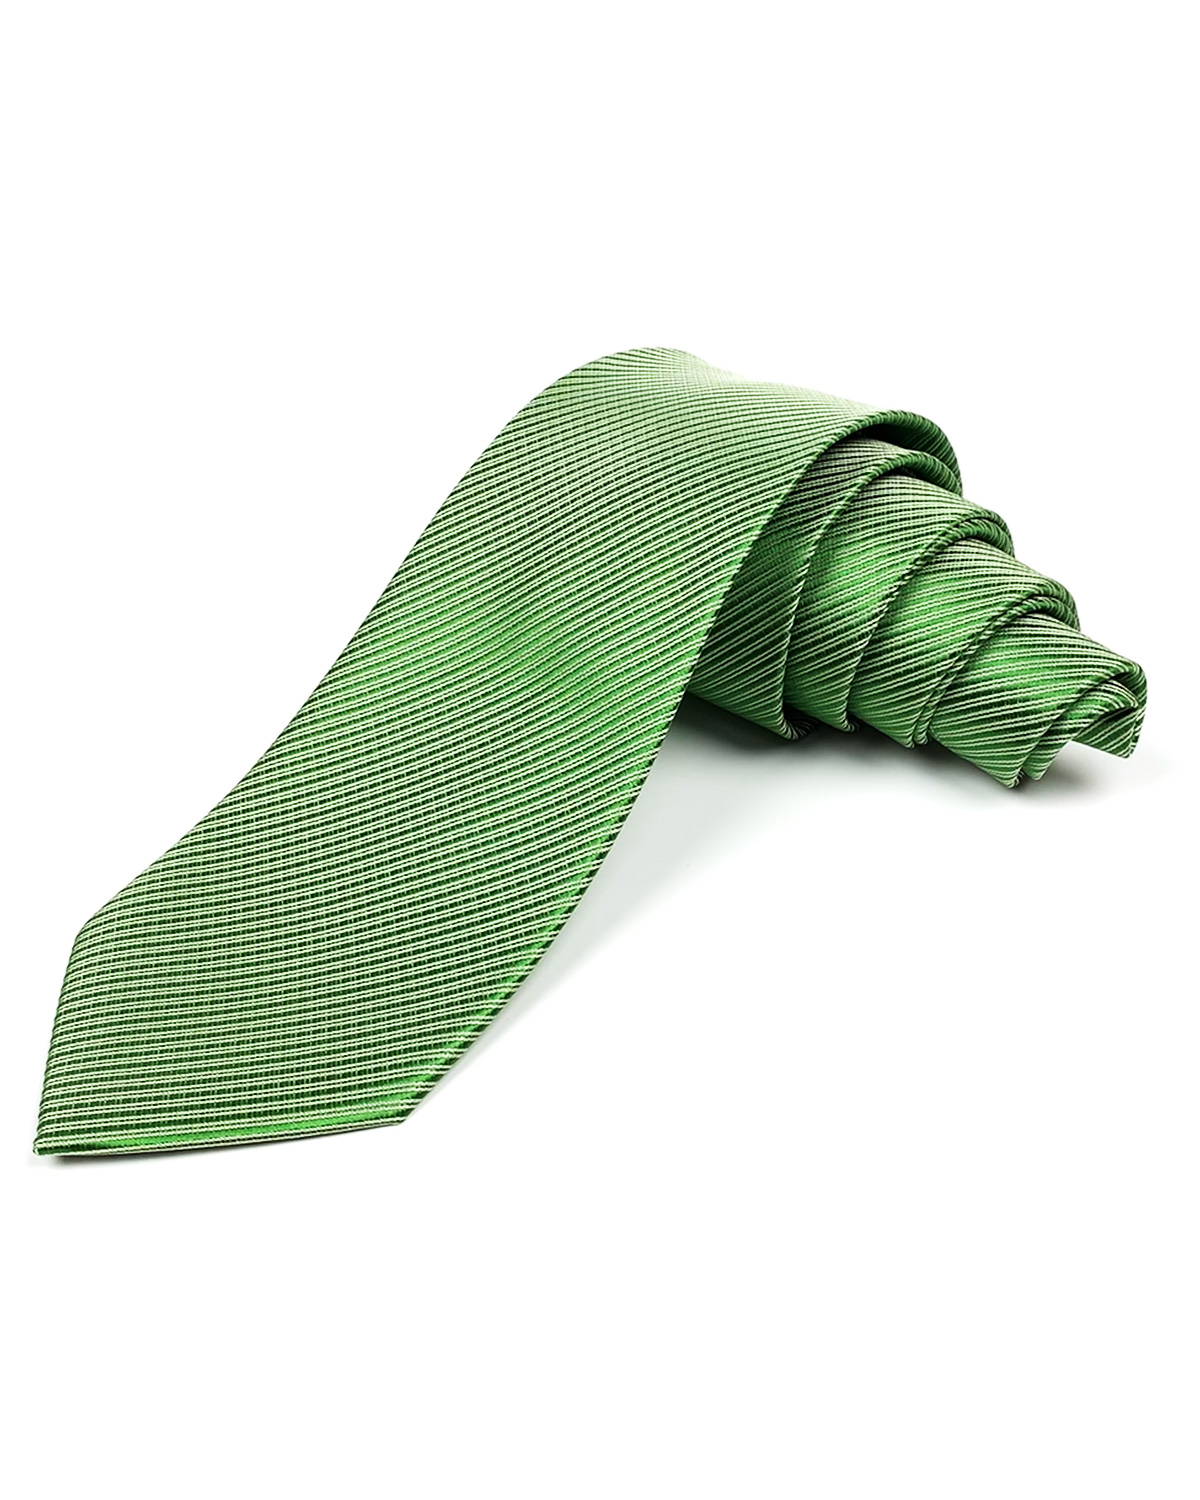 Пошив корпоративных галстуков с логотипом. Брендированные галстуки. Заказать галстуки в фирменных цветах заказчика. Изготовление под заказ. Производство галстуков с логотипом в Киеве